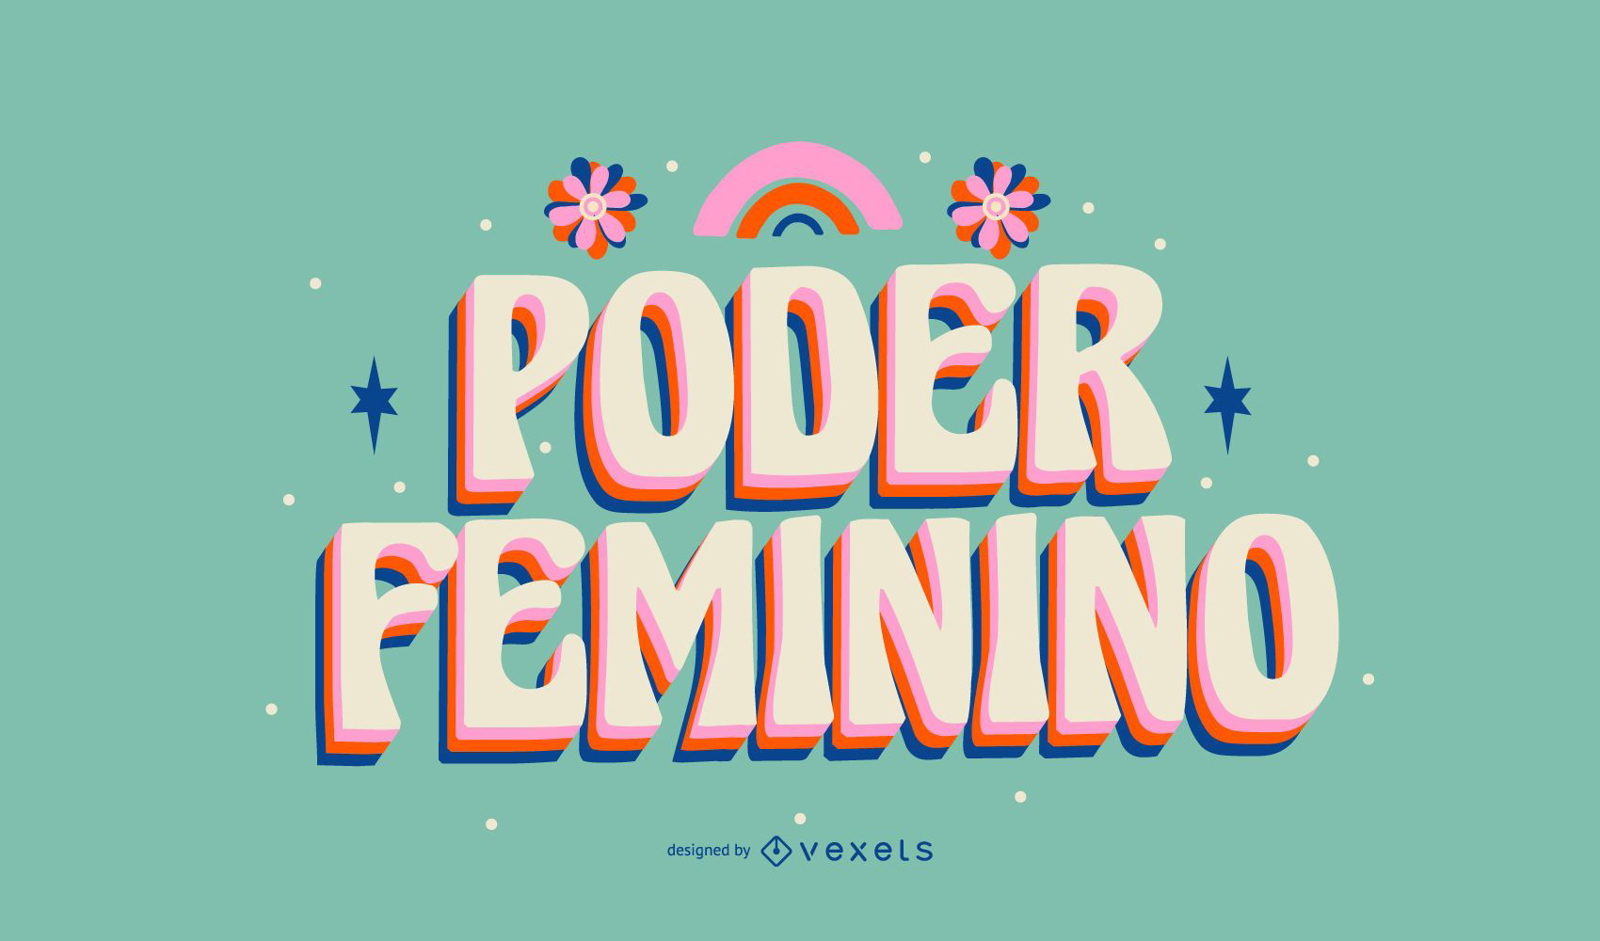 Letras portuguesas del d?a de la mujer